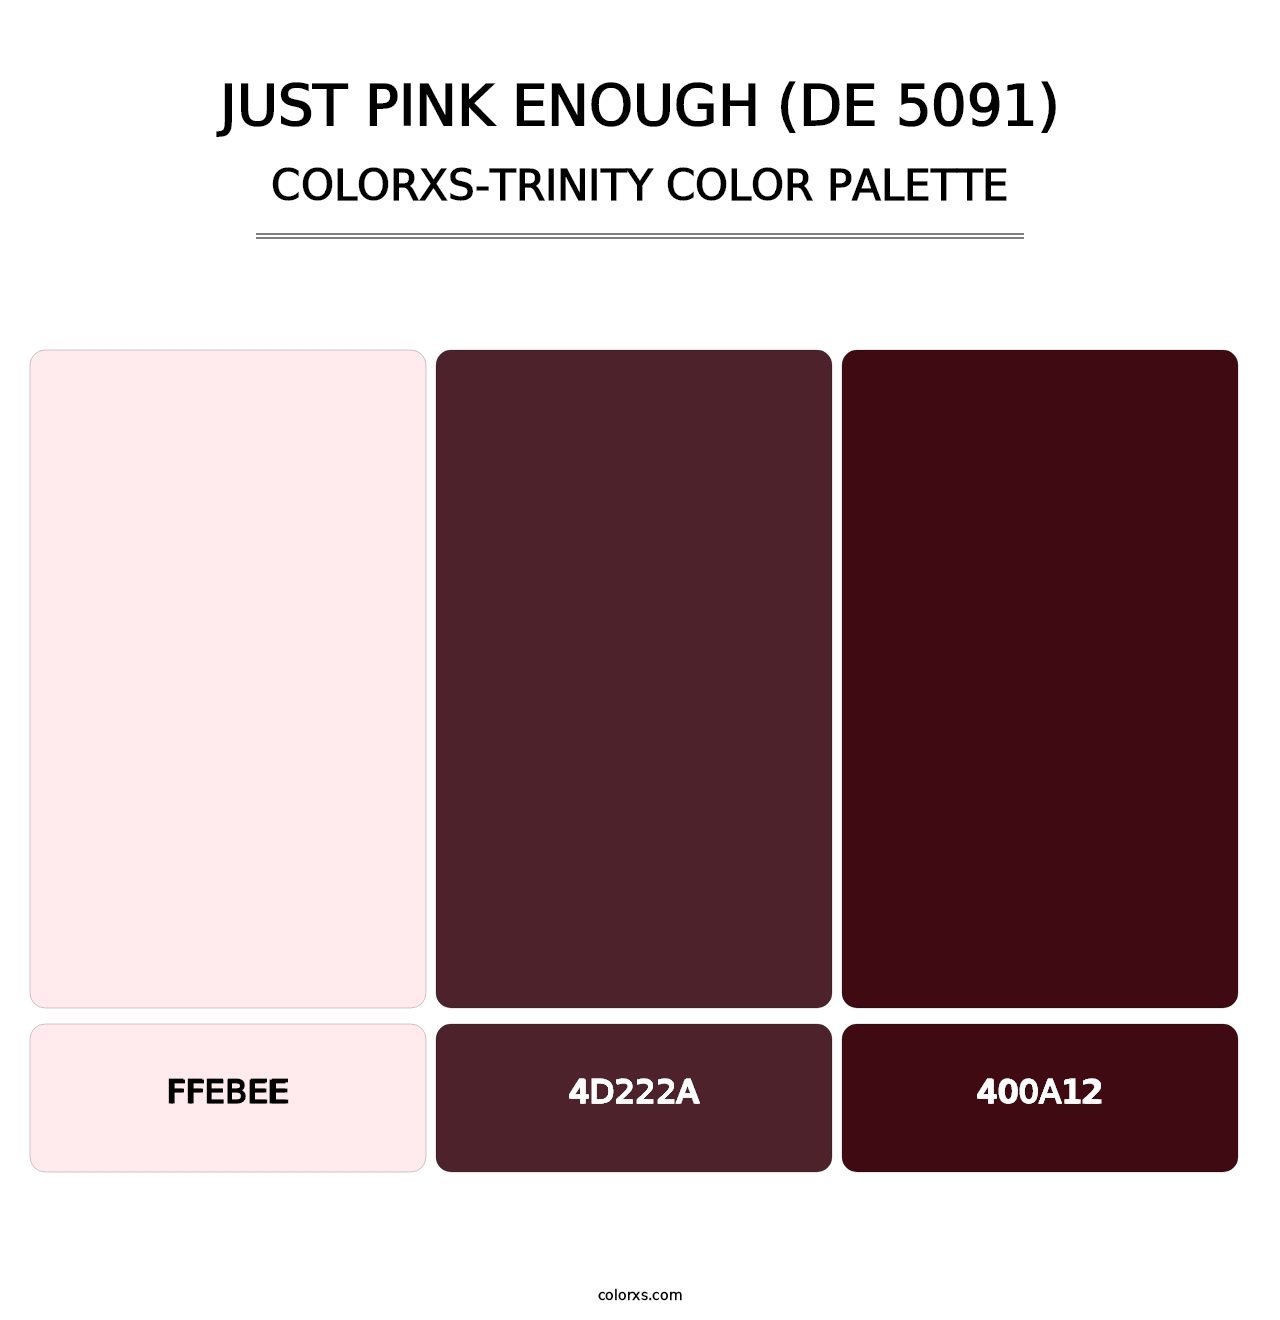 Just Pink Enough (DE 5091) - Colorxs Trinity Palette